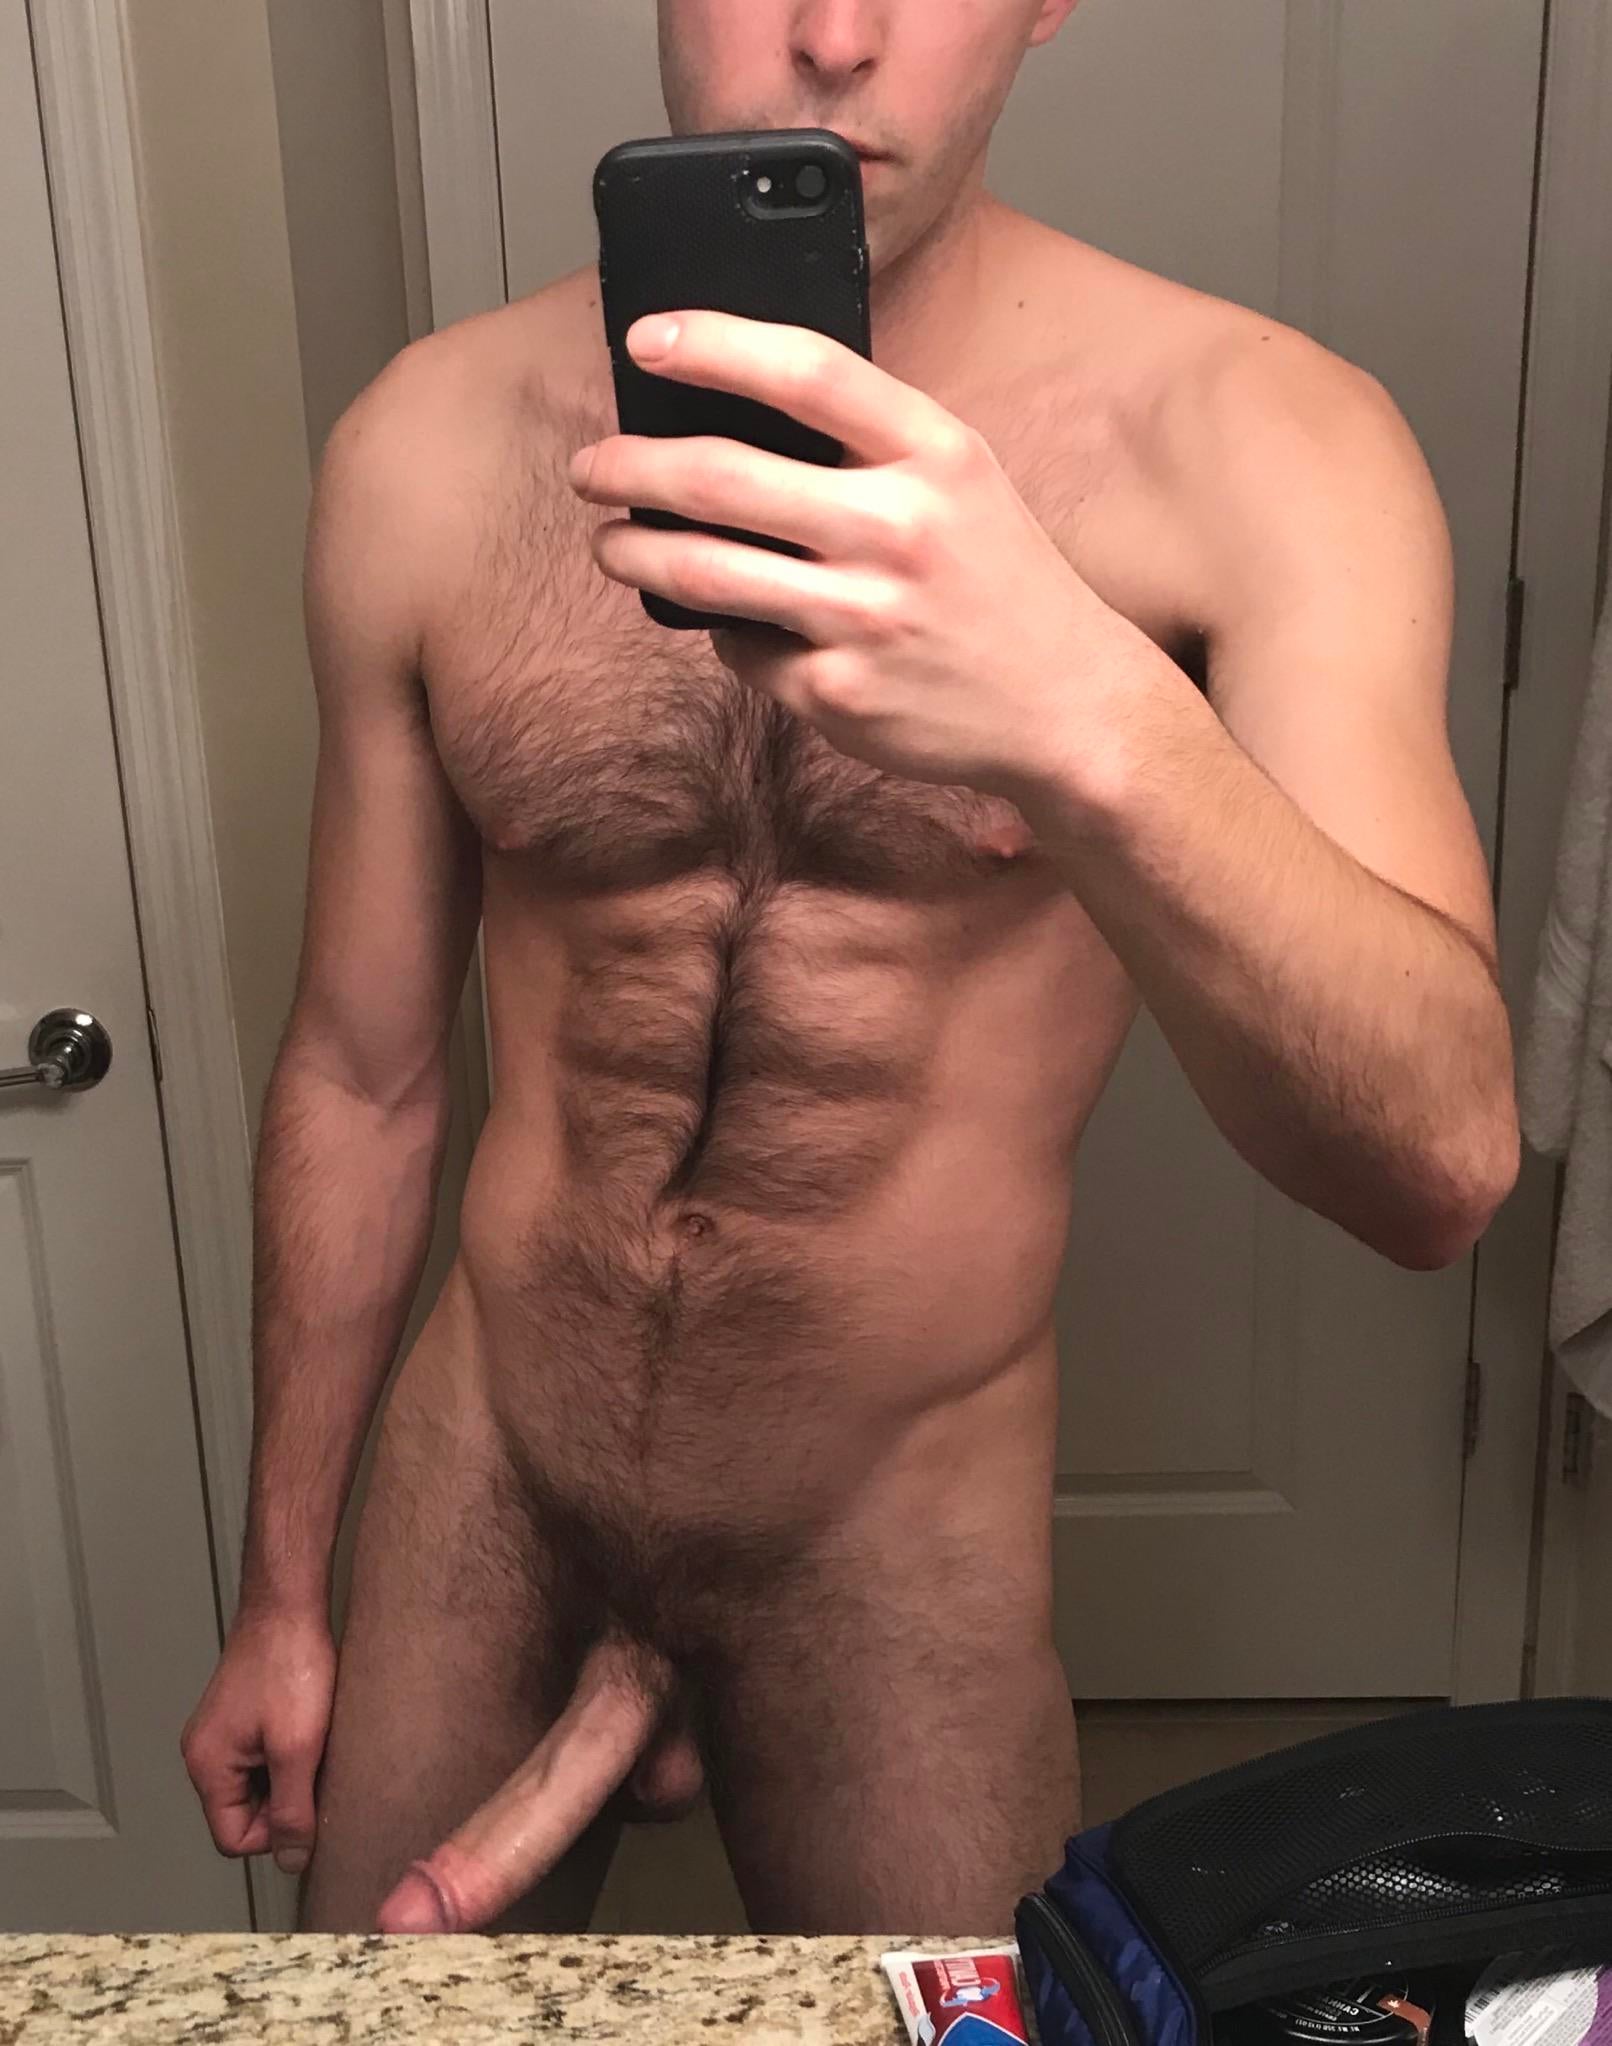 Hot guys naked selfie